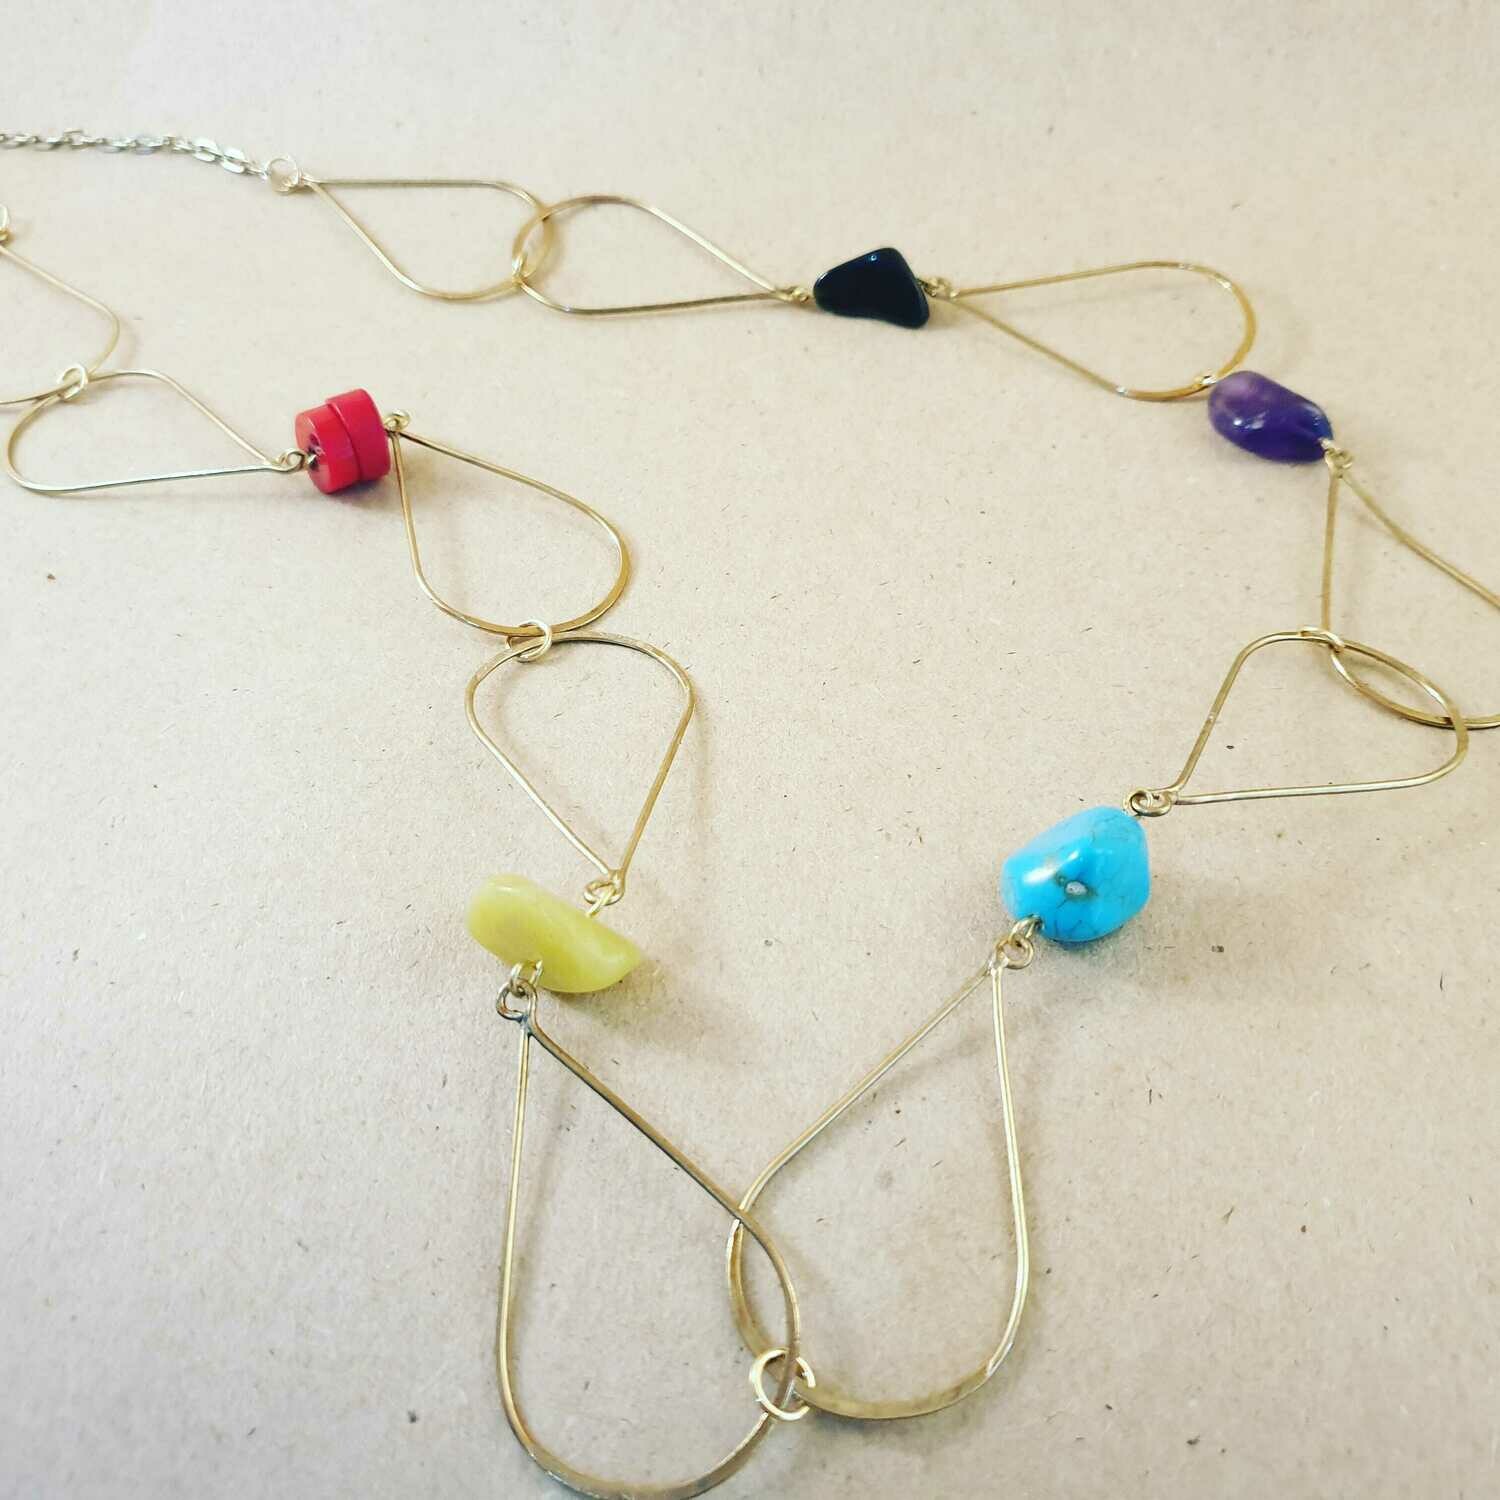 Semi precious loop necklace